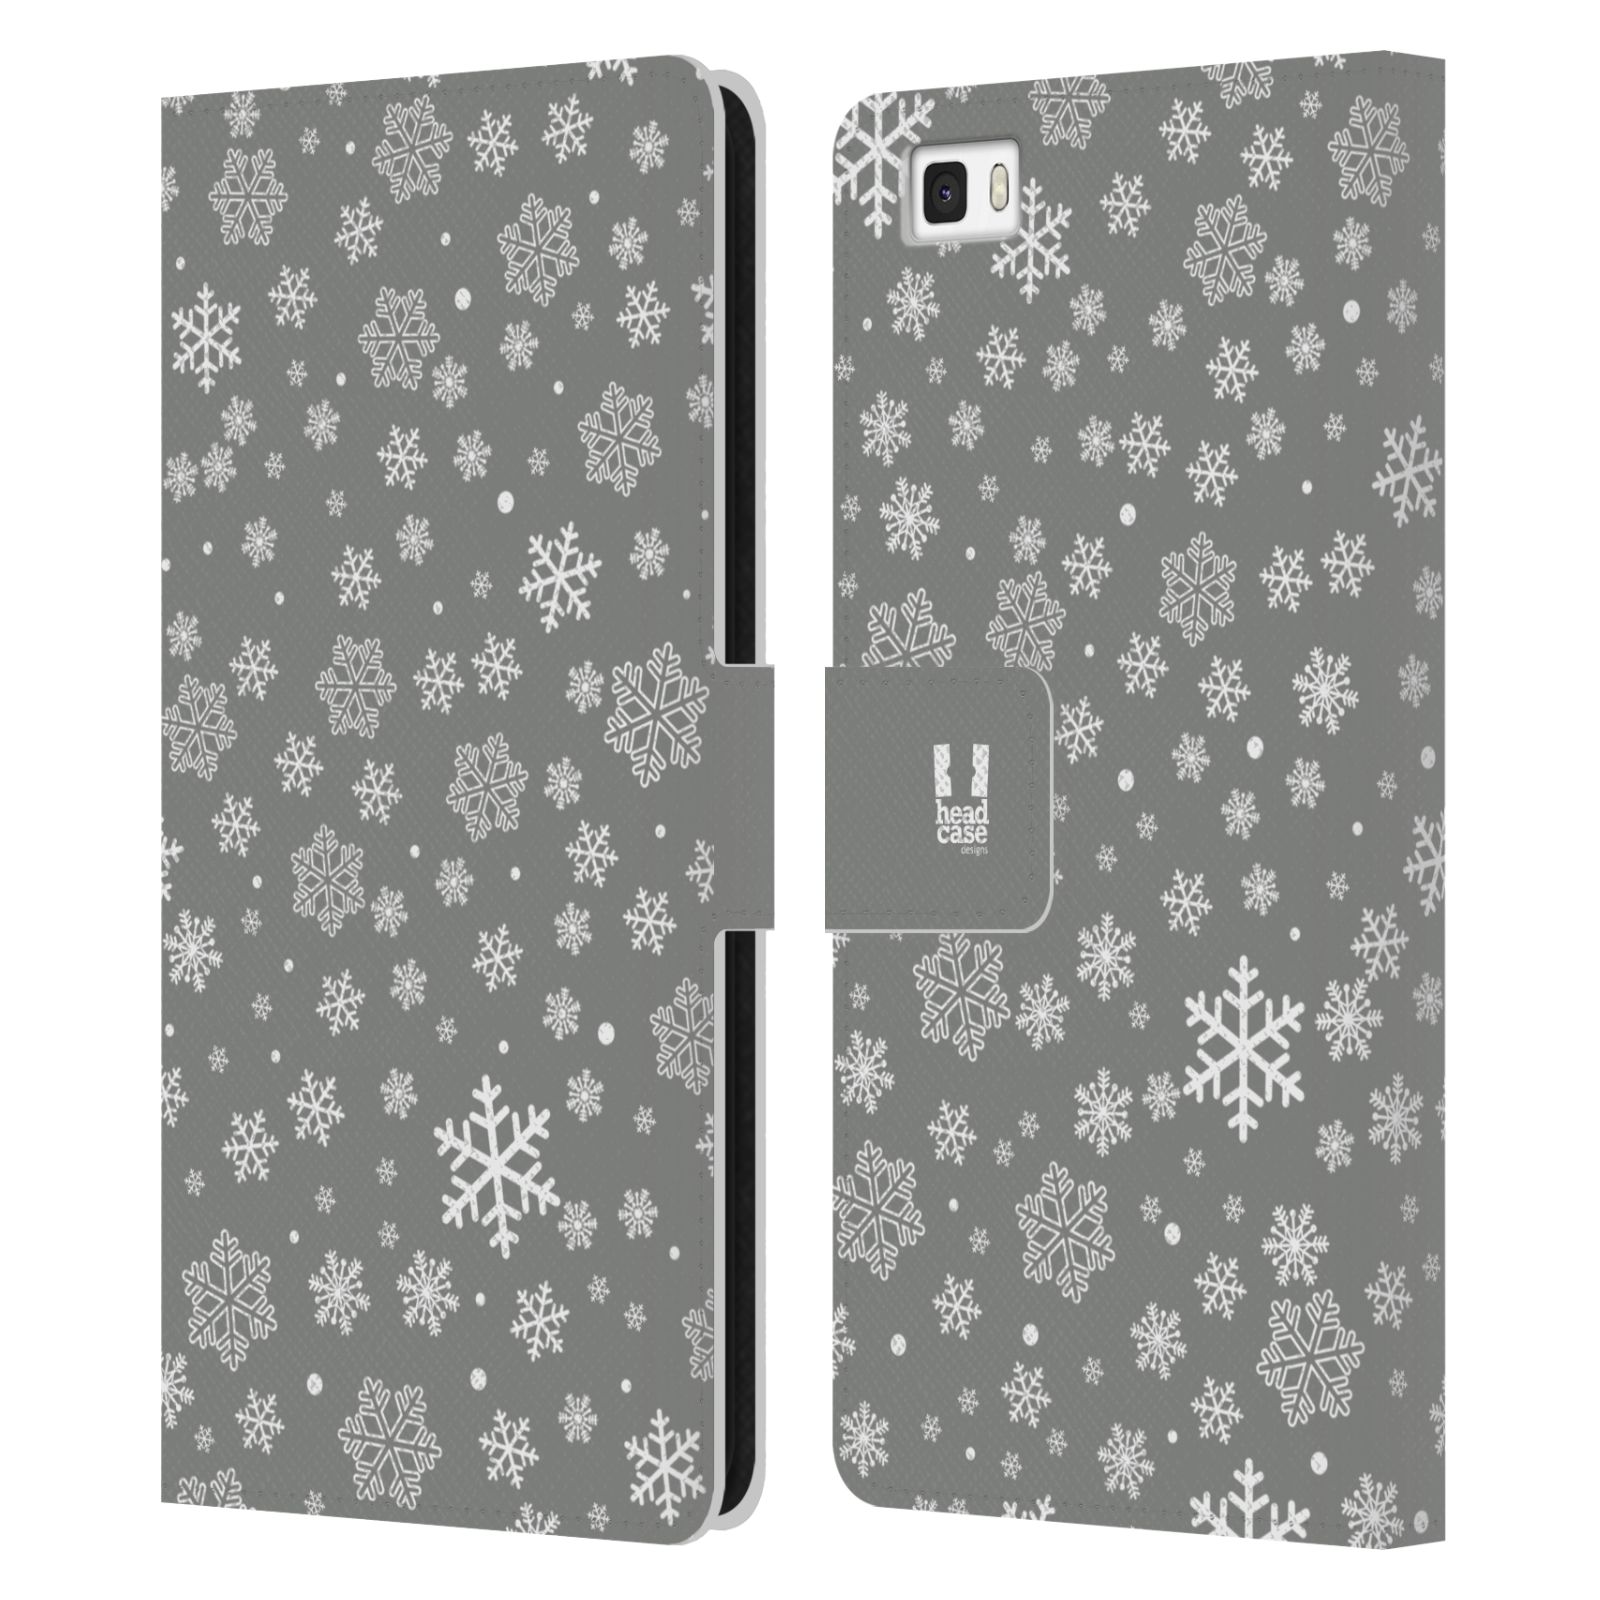 HEAD CASE Flipové pouzdro pro mobil Huawei P8 LITE stříbrné vzory sněžná vločka